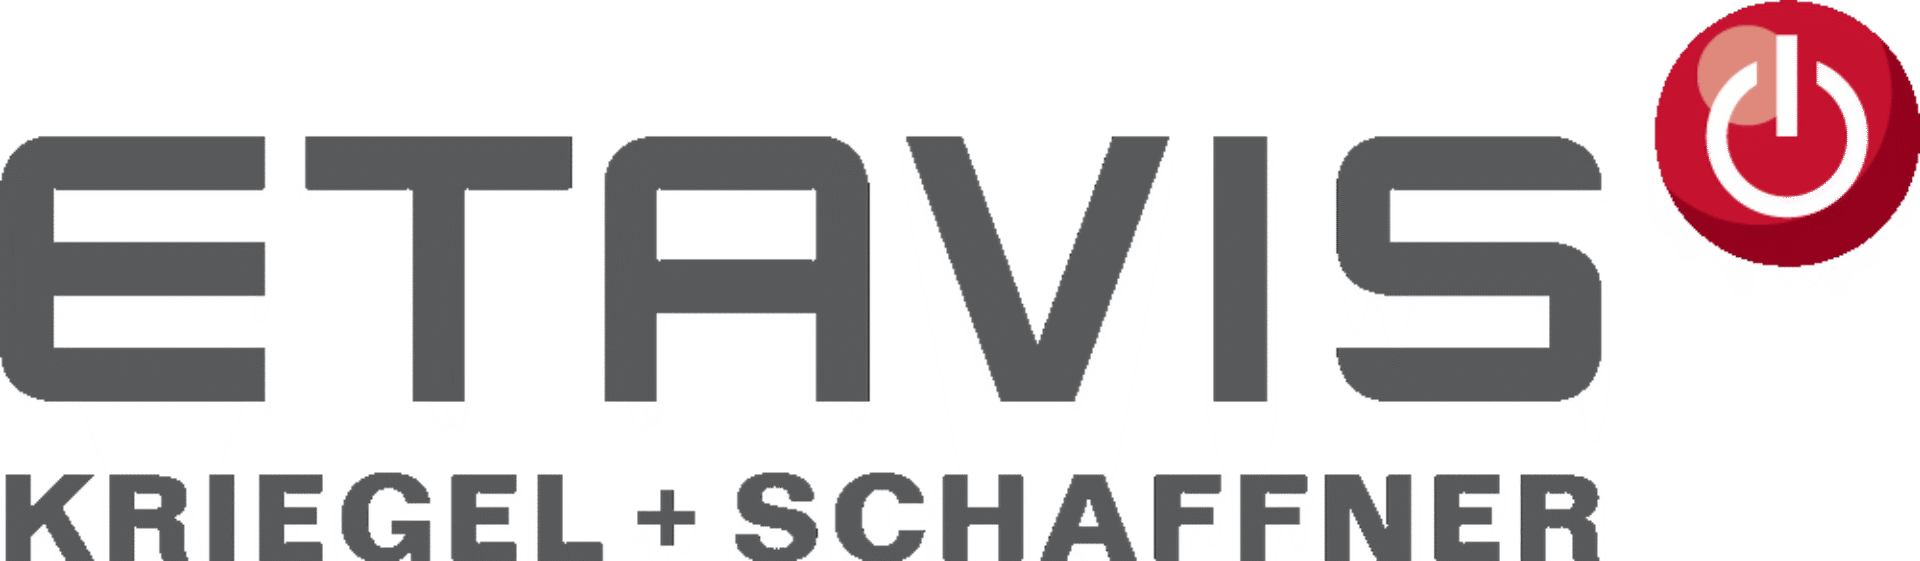 Etavis Kriegel + Schaffner AG